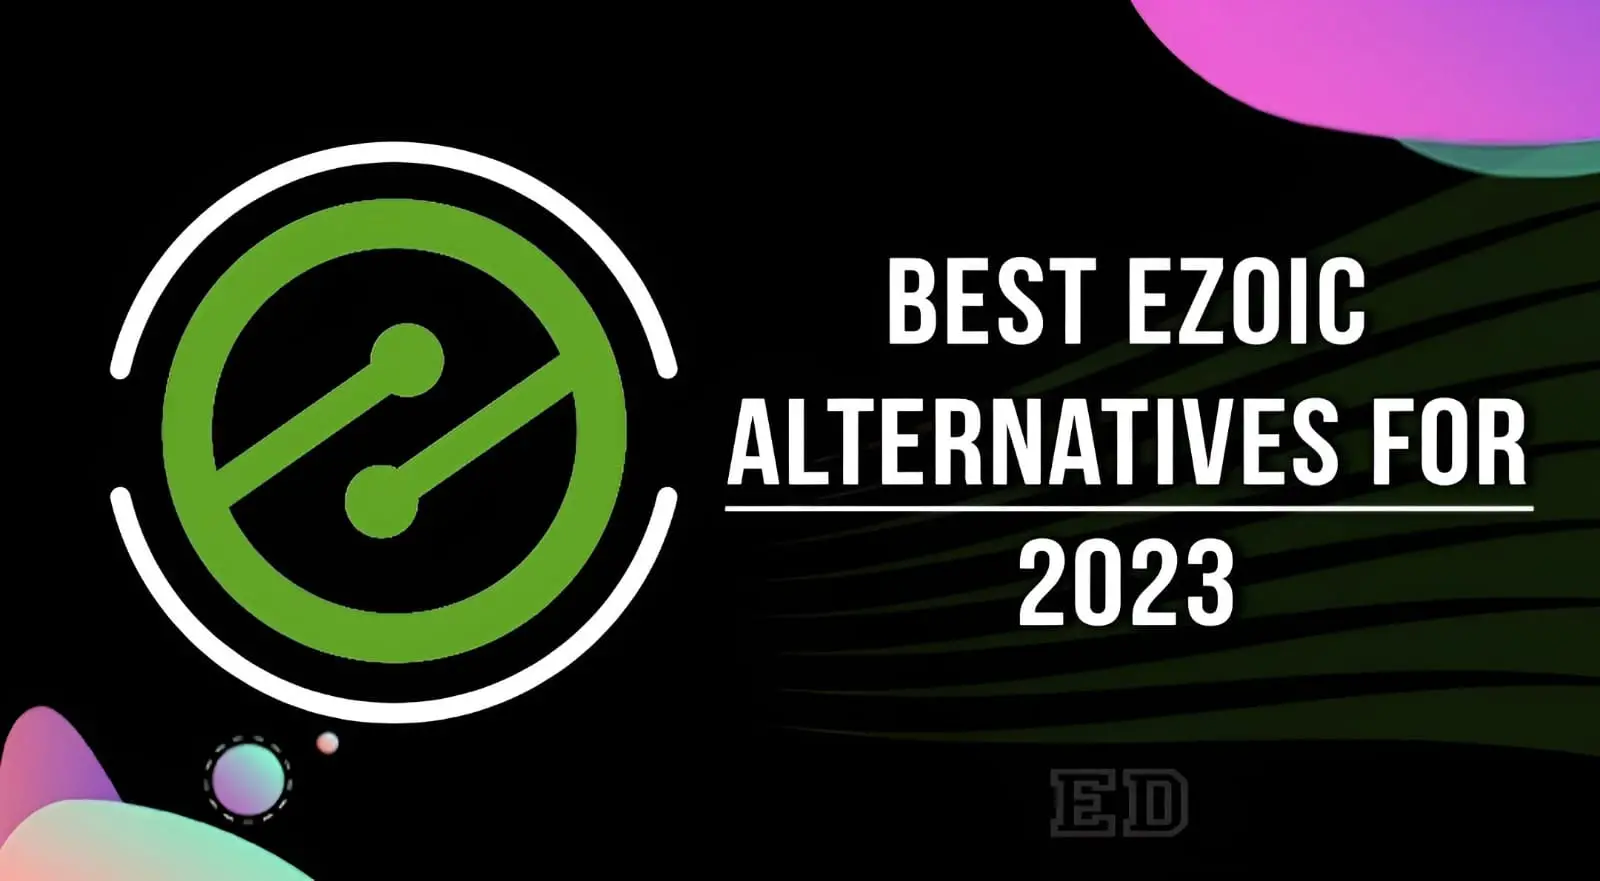 Best Ezoic Alternatives for 2023